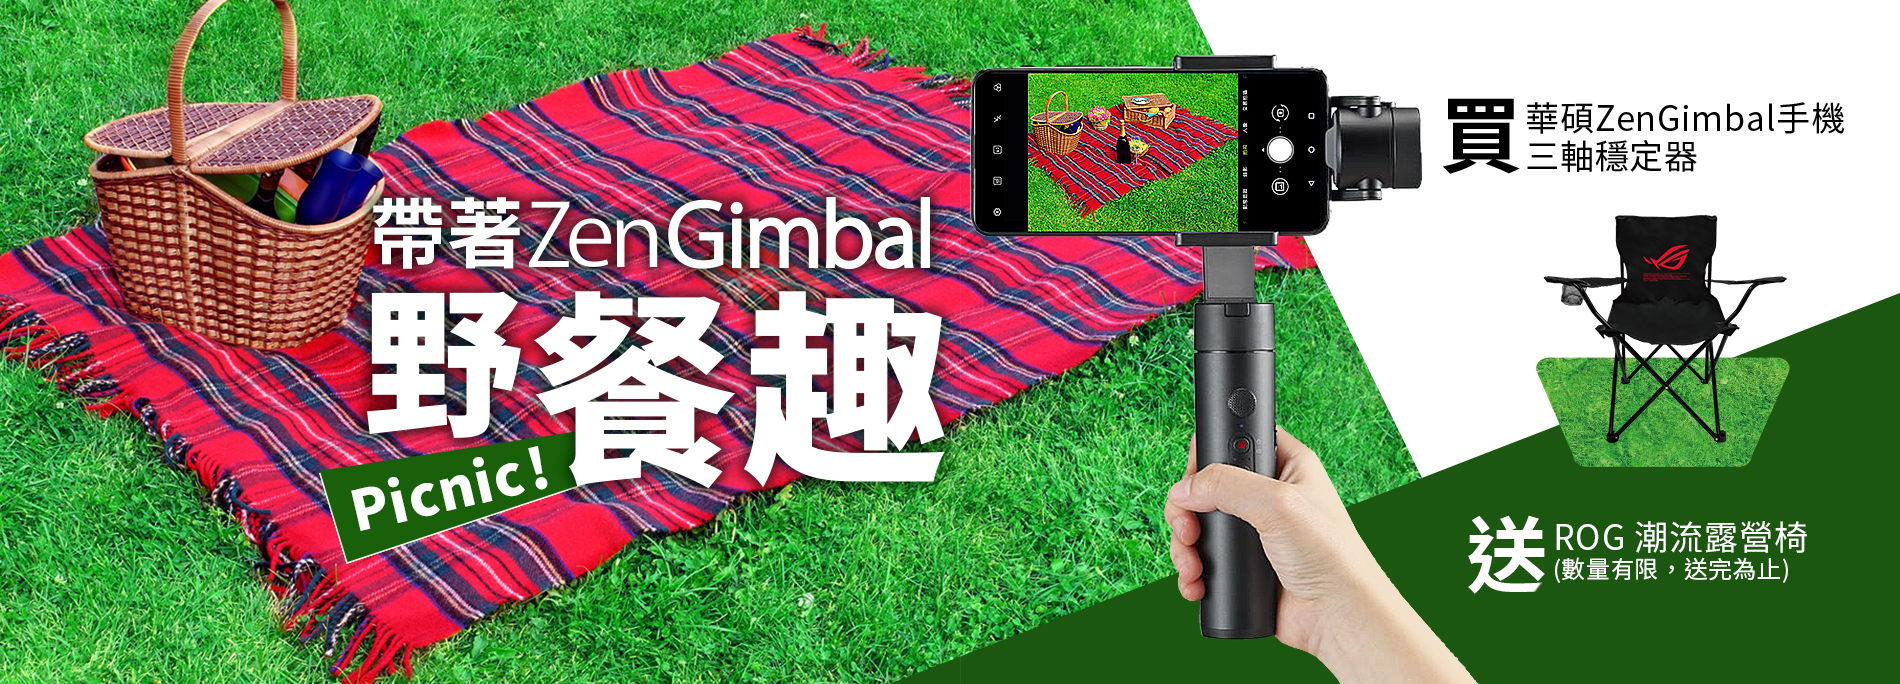 活動期間購買 華碩 ZenGimbal 手機三軸穩定器，官網登錄送『ROG 露營椅 』(數量有限，送完為止)